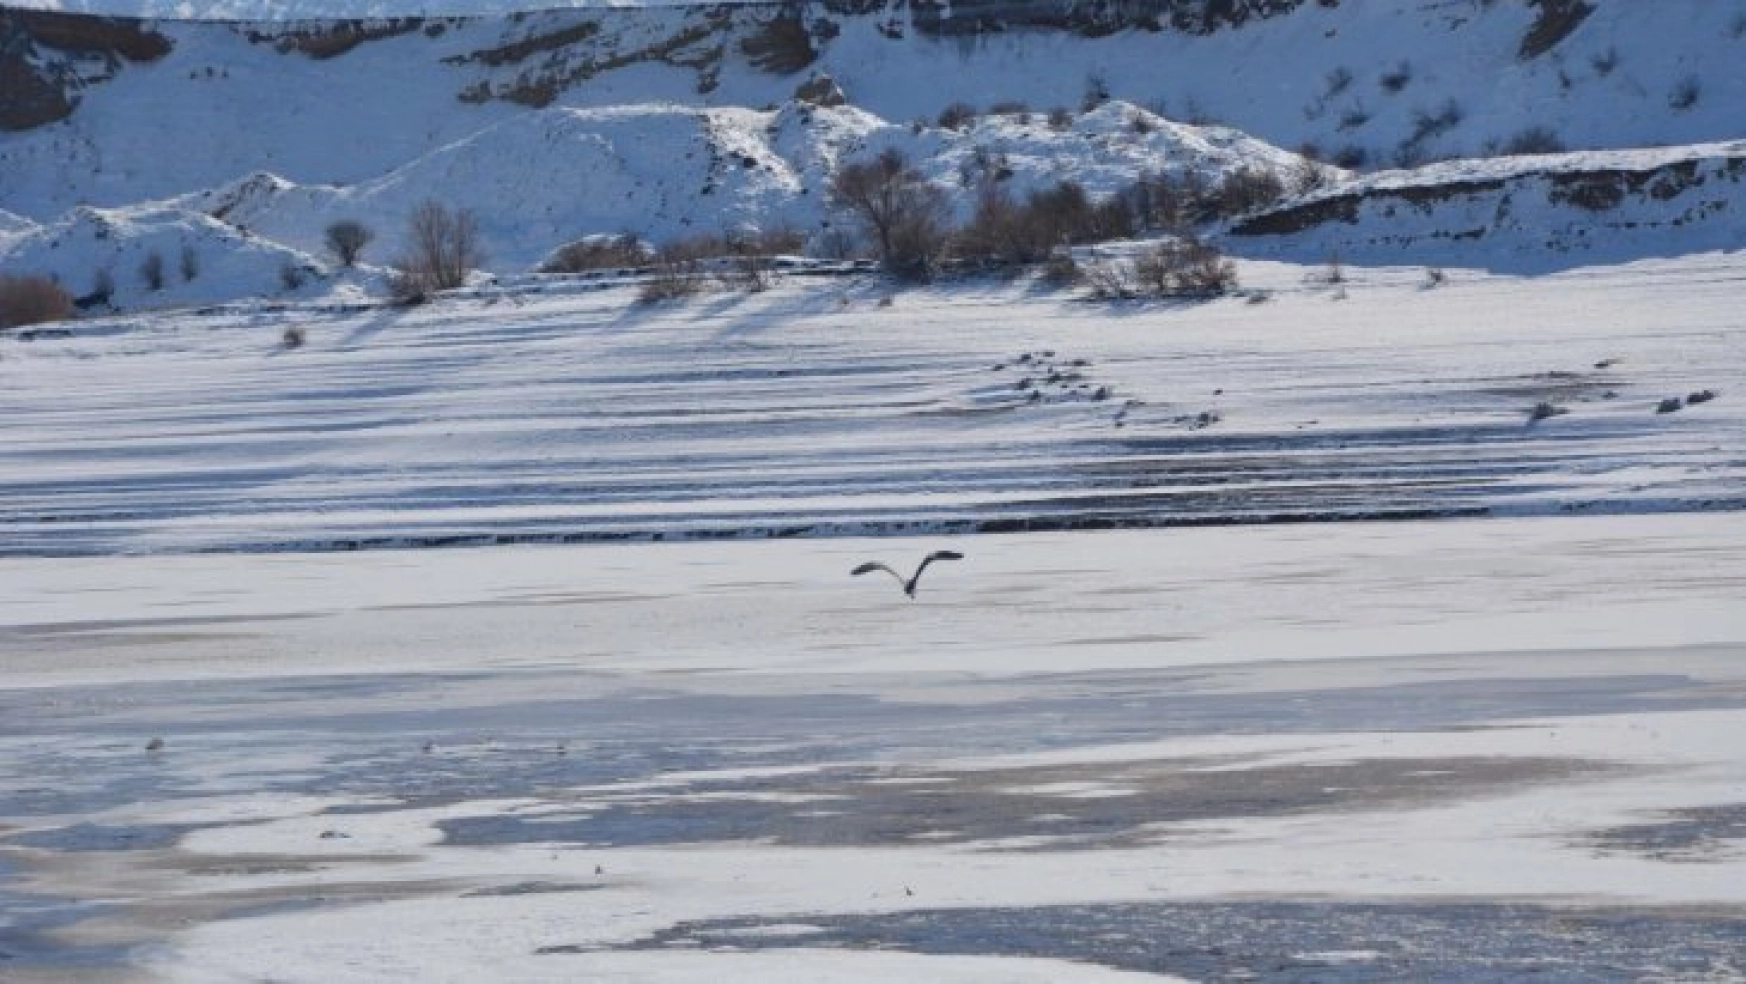 Kılıçkaya baraj gölü kısmen buz tuttu